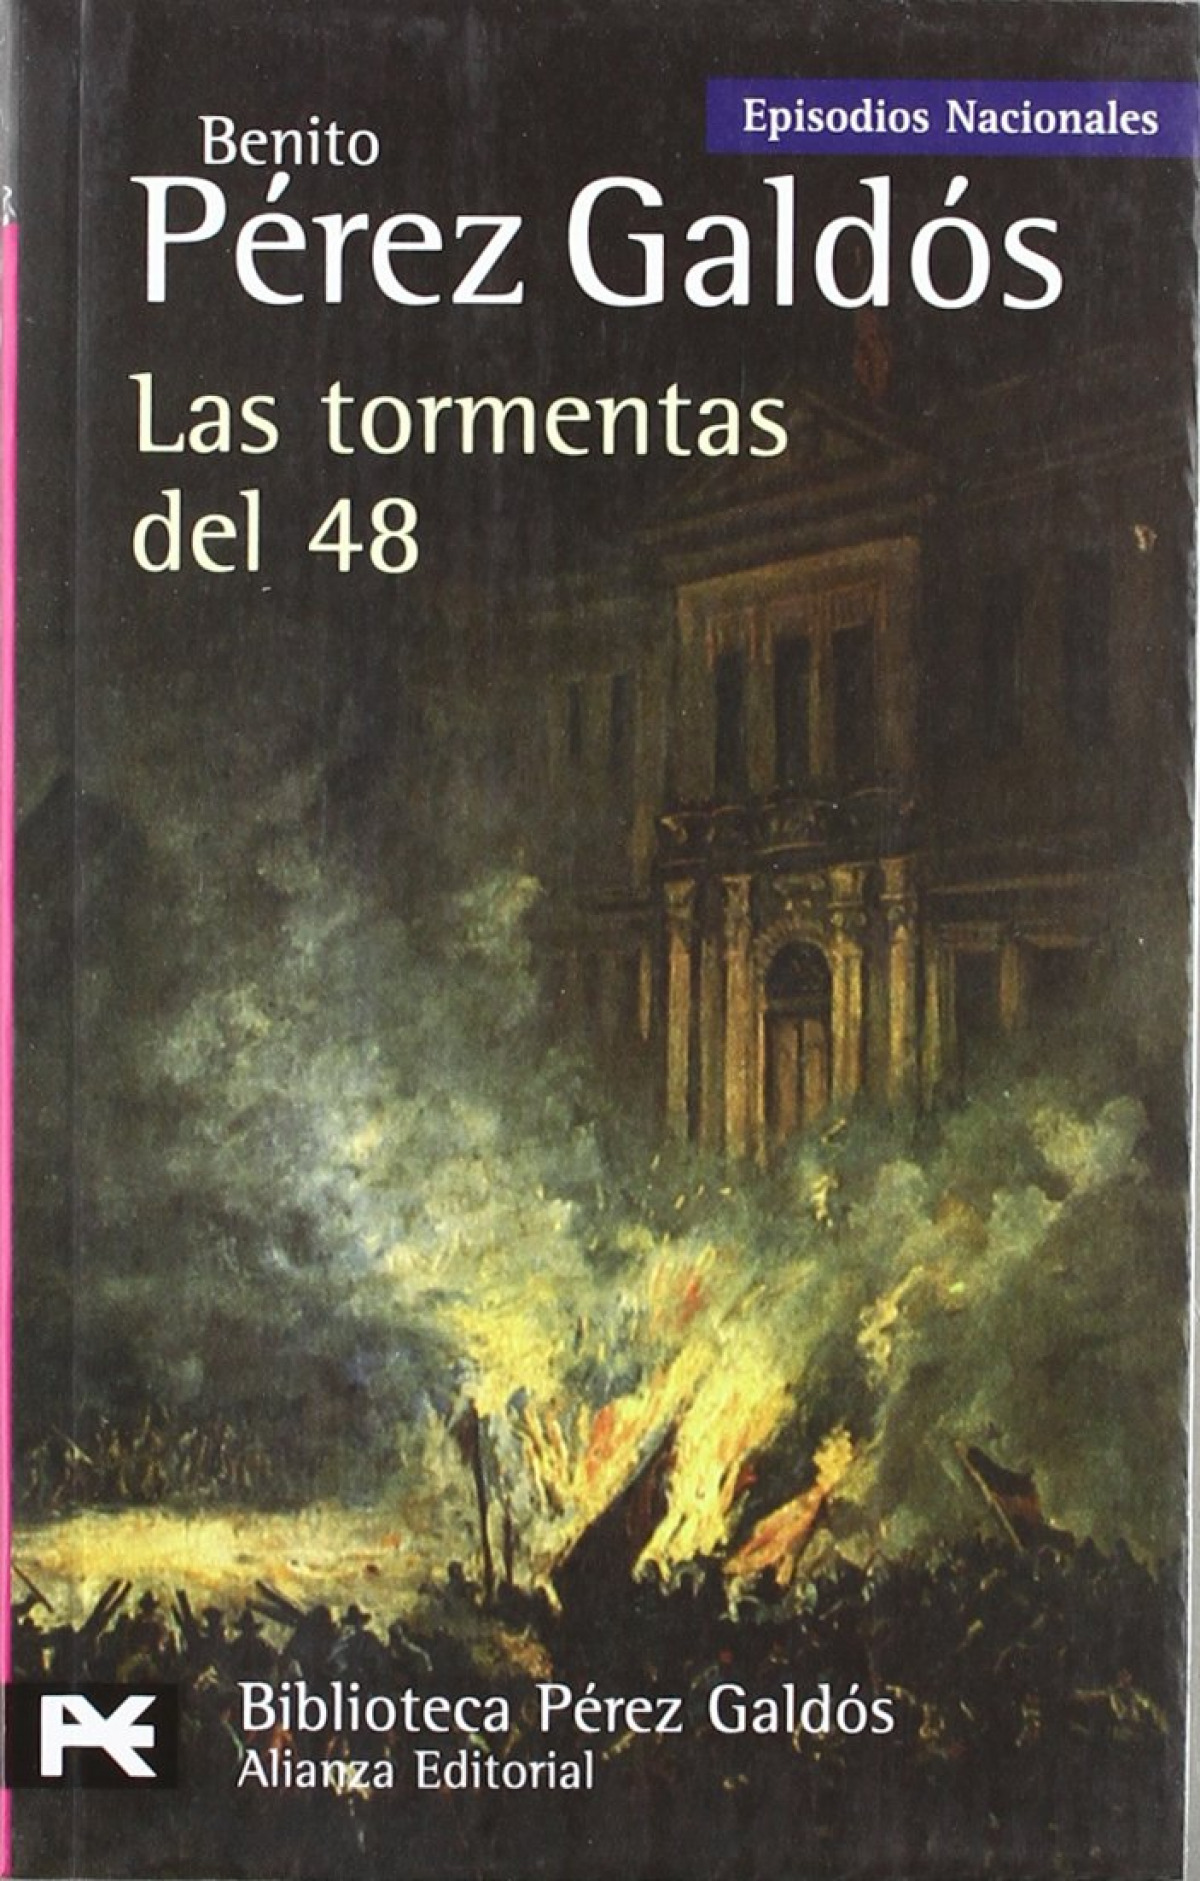 Las tormentas del 48 Episodios Nacionales, 31 / Cuarta serie - Pérez Galdós, Benito